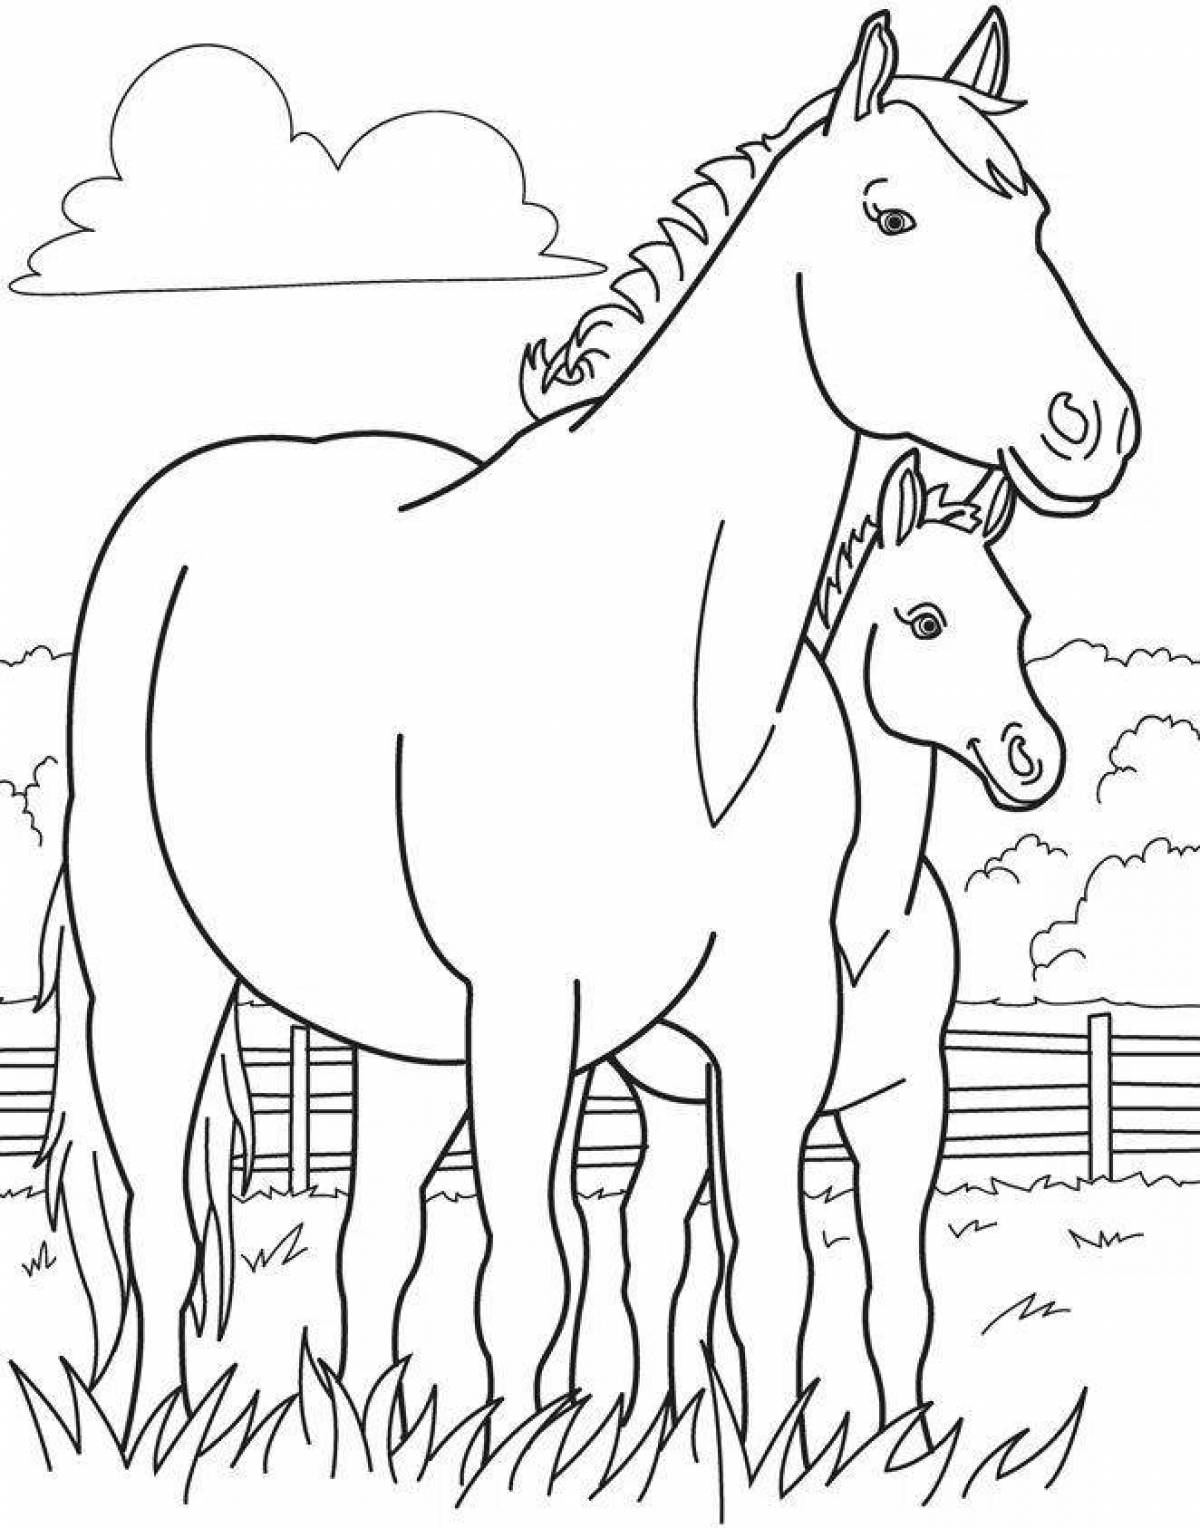 Раскрасить лошадку. Раскраска. Лошадка. Лошадка раскраска для детей. Лошадь раскраска для детей. Раскраска лошадь с жеребенком.